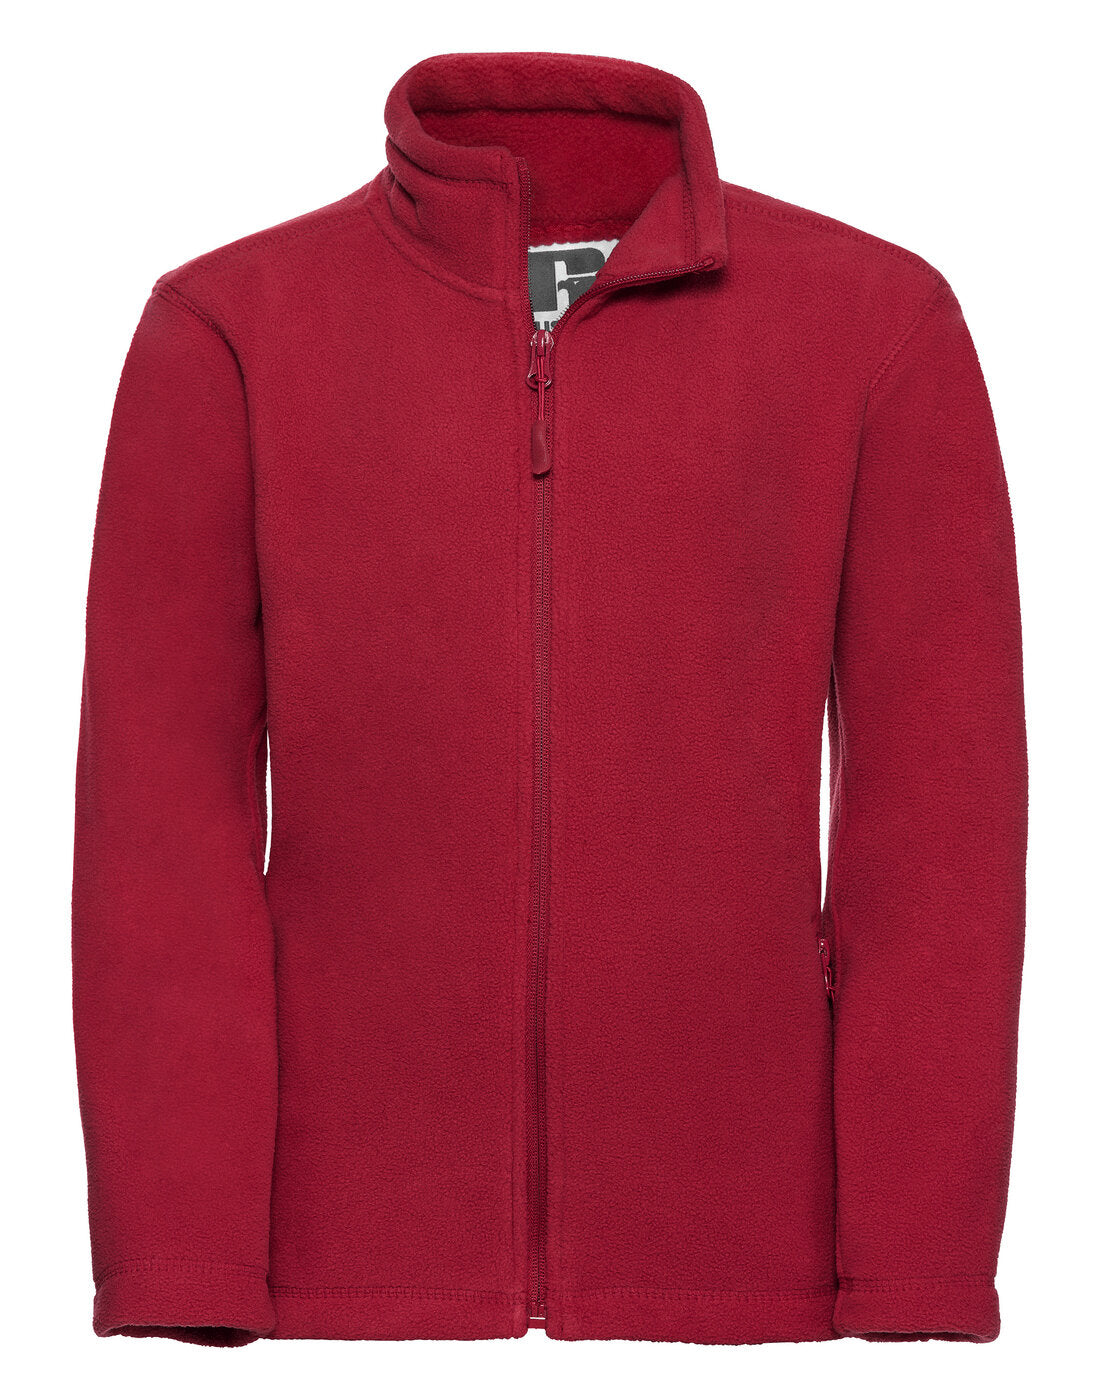 Russell Childrens Full Zip Outdoor Fleece Classic Red